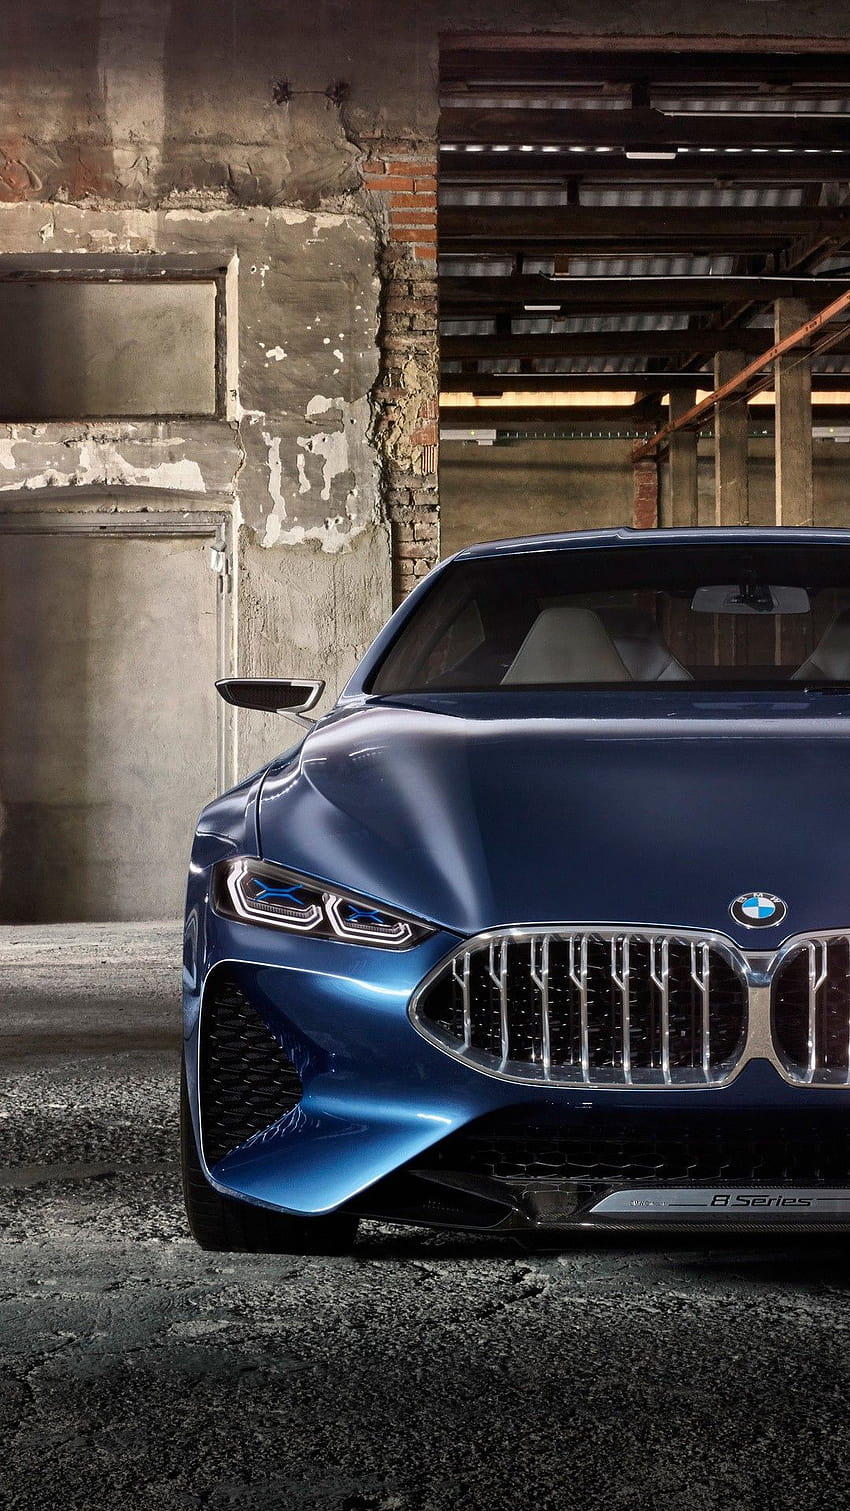 BMW M8 - biểu tượng của tốc độ và hiệu suất. Hãy cùng chiêm ngưỡng những hình ảnh tuyệt đẹp về chiếc xe thể thao này và cảm nhận sức mạnh của nó.